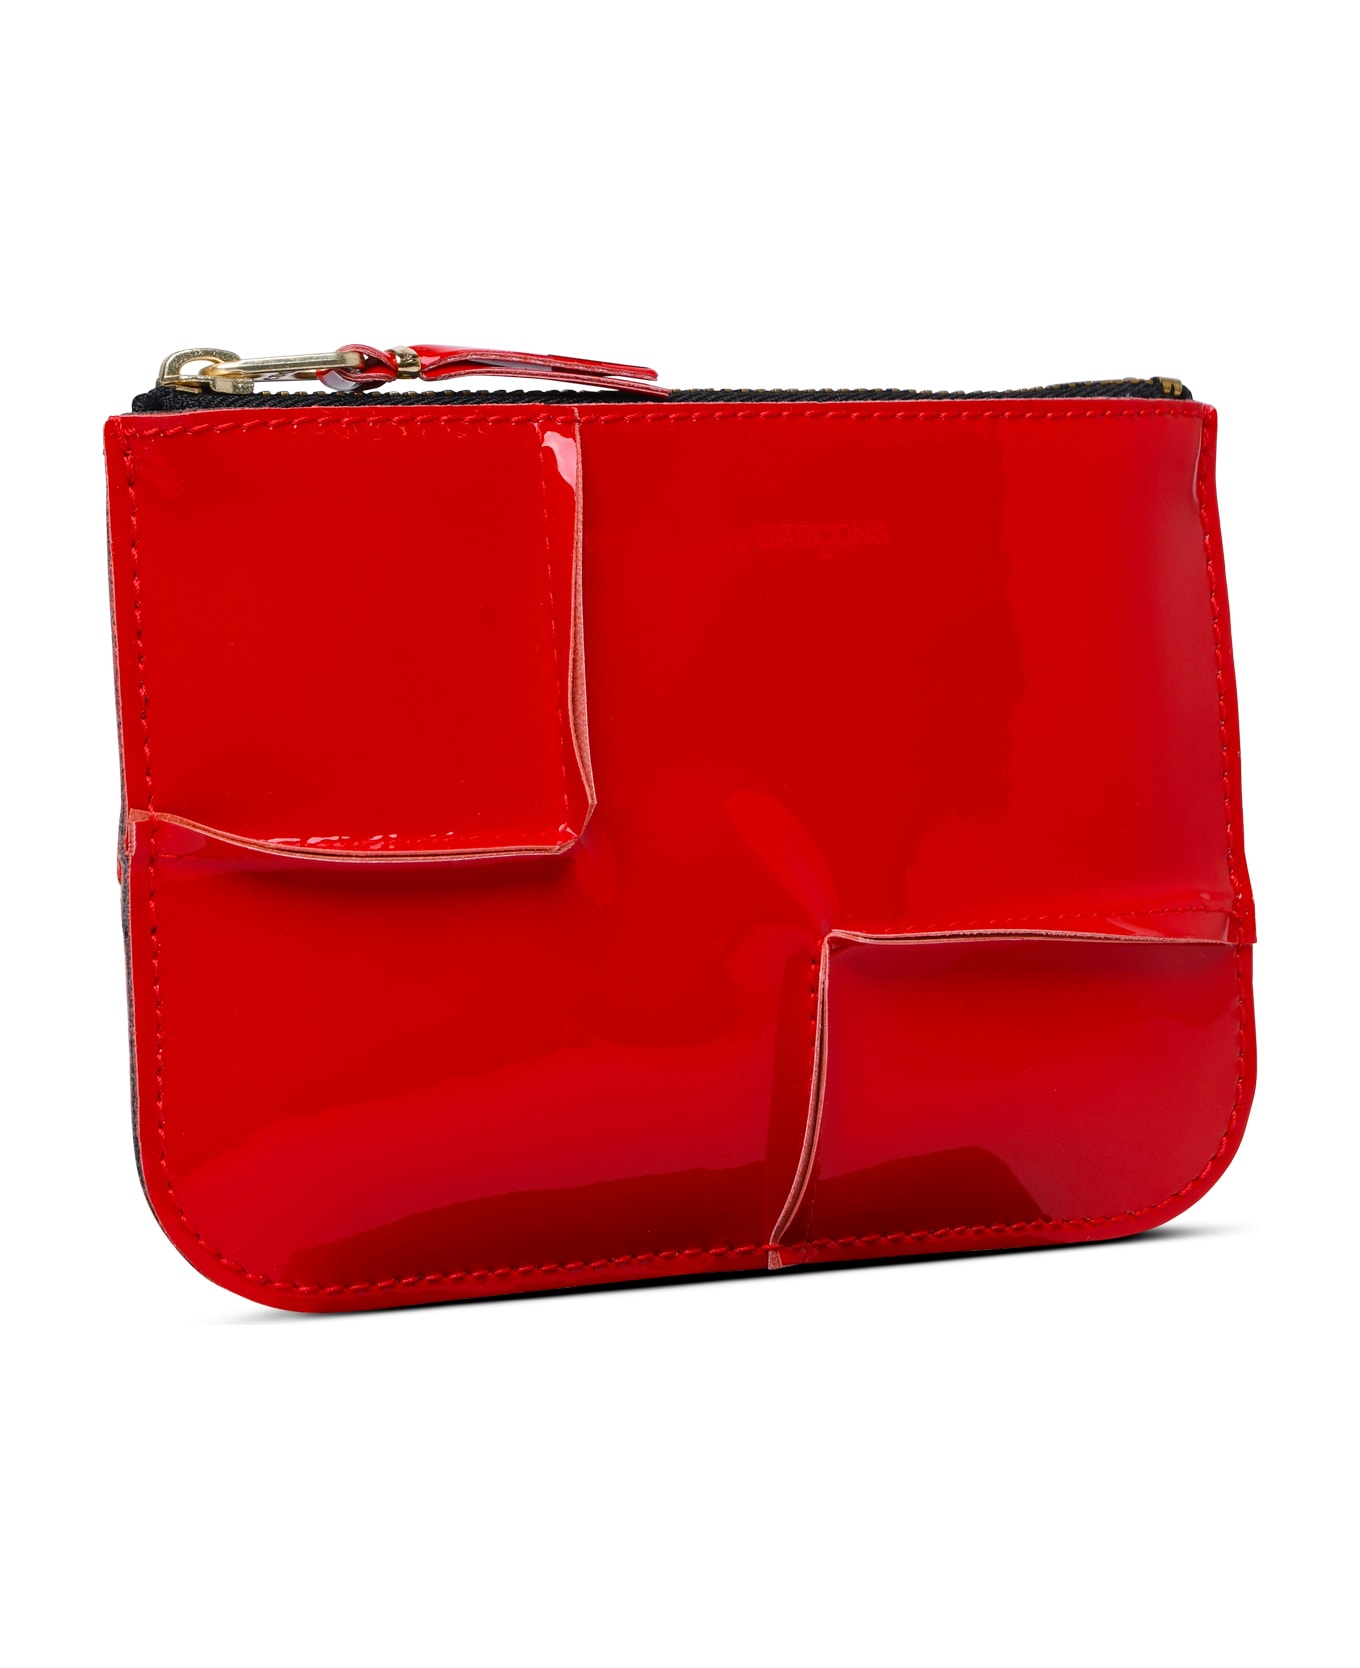 Comme des Garçons Wallet 'medley' Red Leather Card Holder - Red